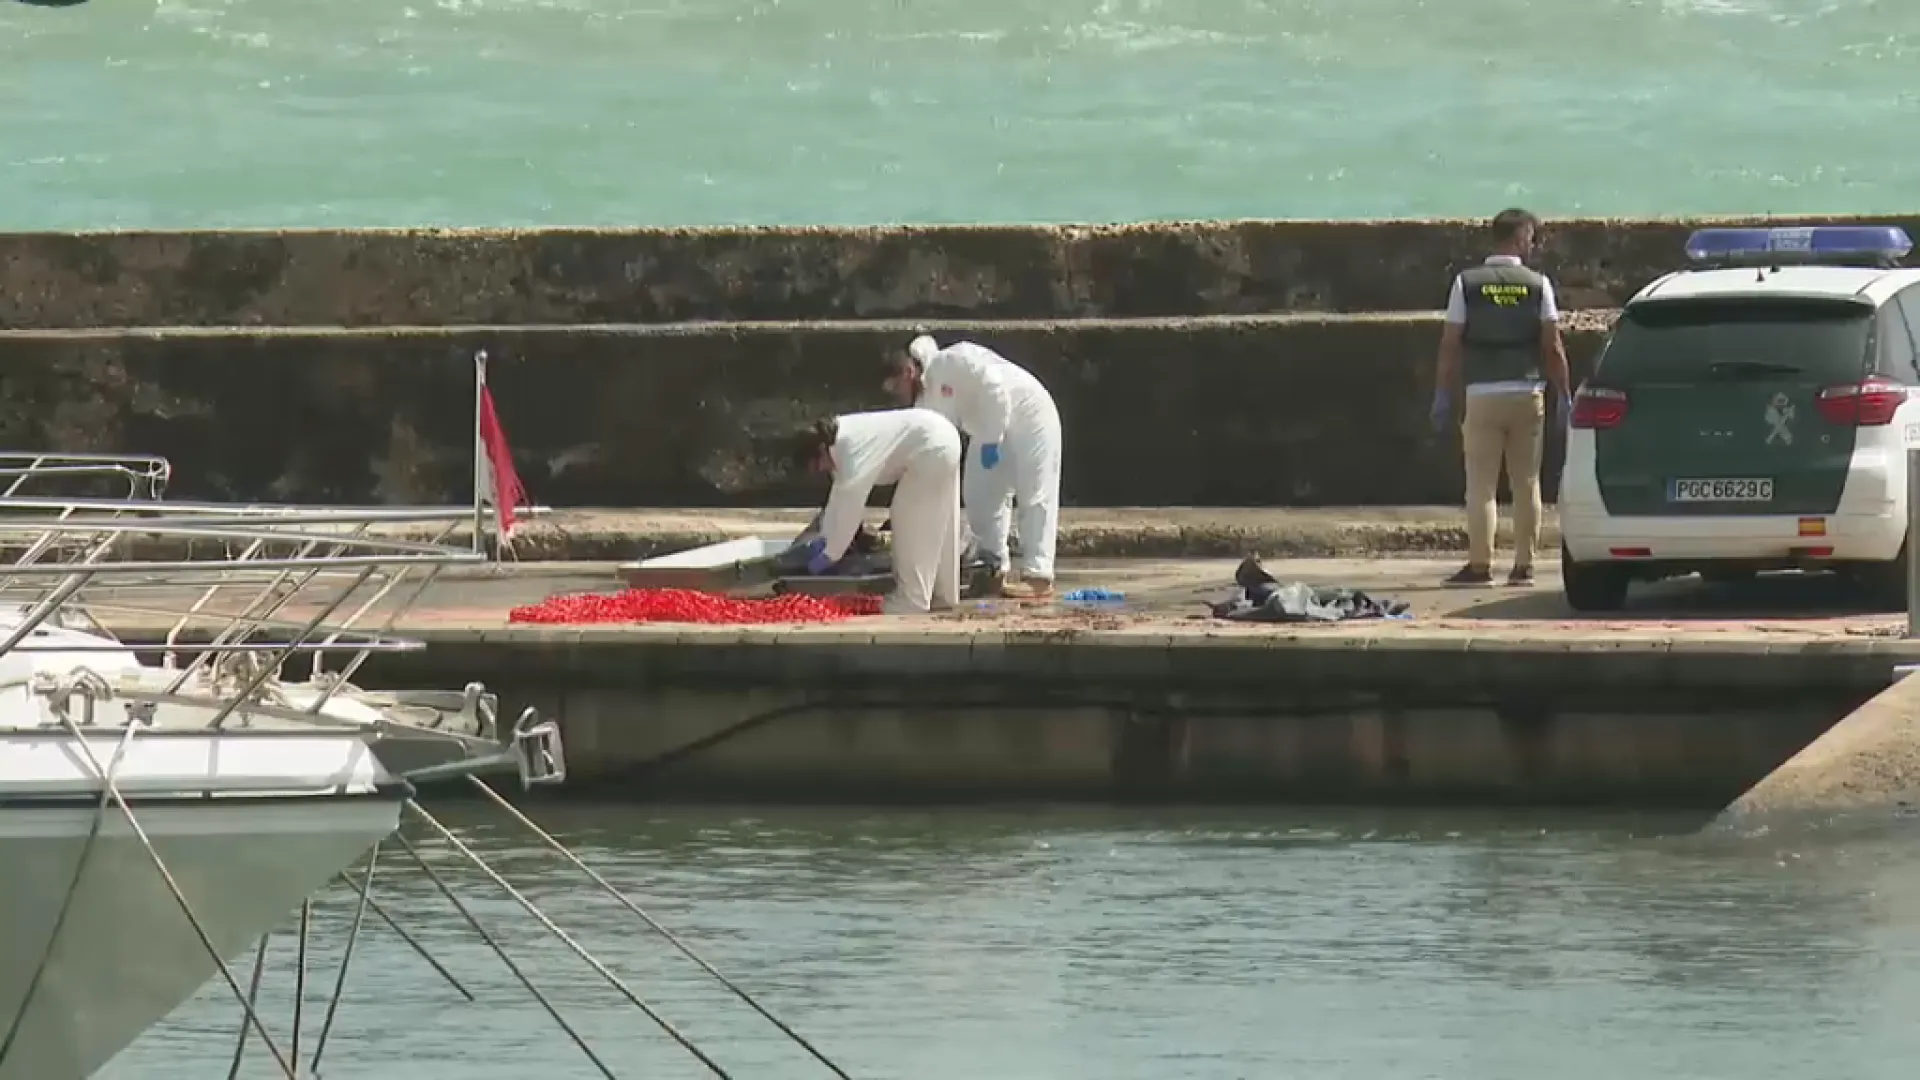 Confirmen que els dos cadàvers trobats a la costa de Mallorca eren els tripulants del veler desaparegut al Canal de Menorca